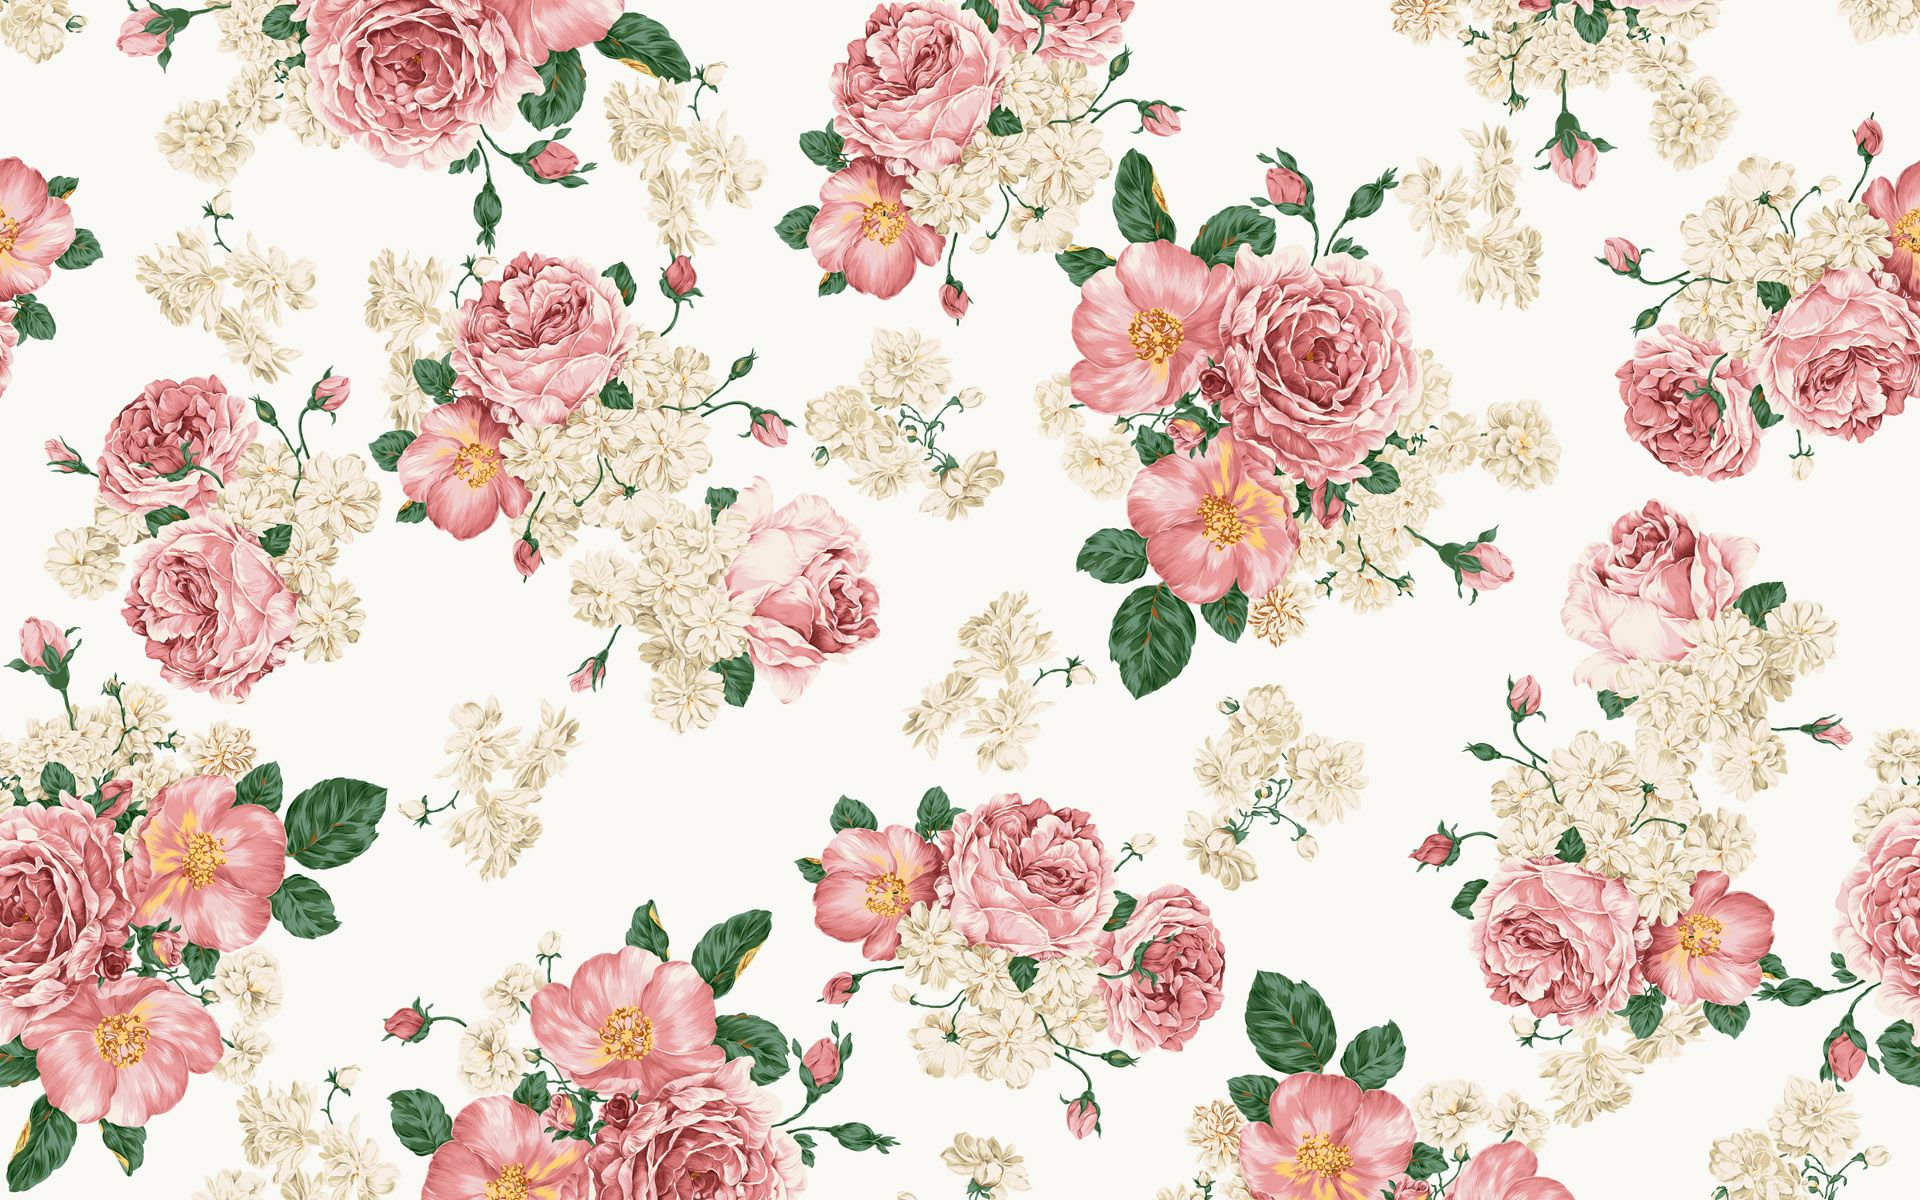 1920x1200 Wallpapers Pattern Rose Designs Flower Art Images | Vintage floral backgrounds, Floral pattern wallpaper, Vintage floral wallpapers